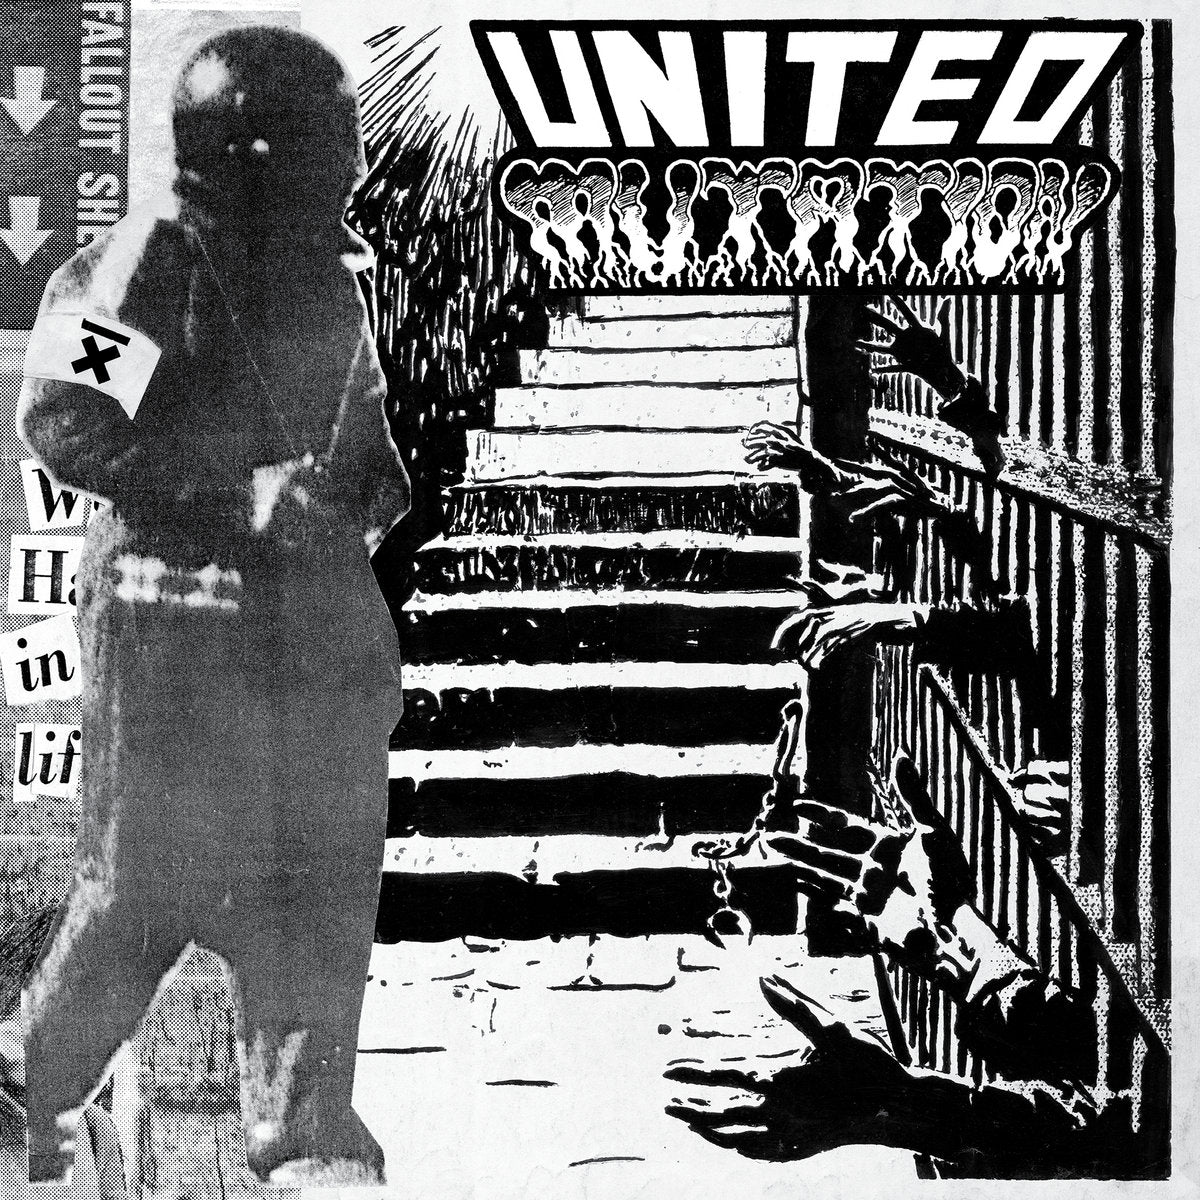 United Mutation - Dark Self Image LP - Vinyl - Radio Raheem